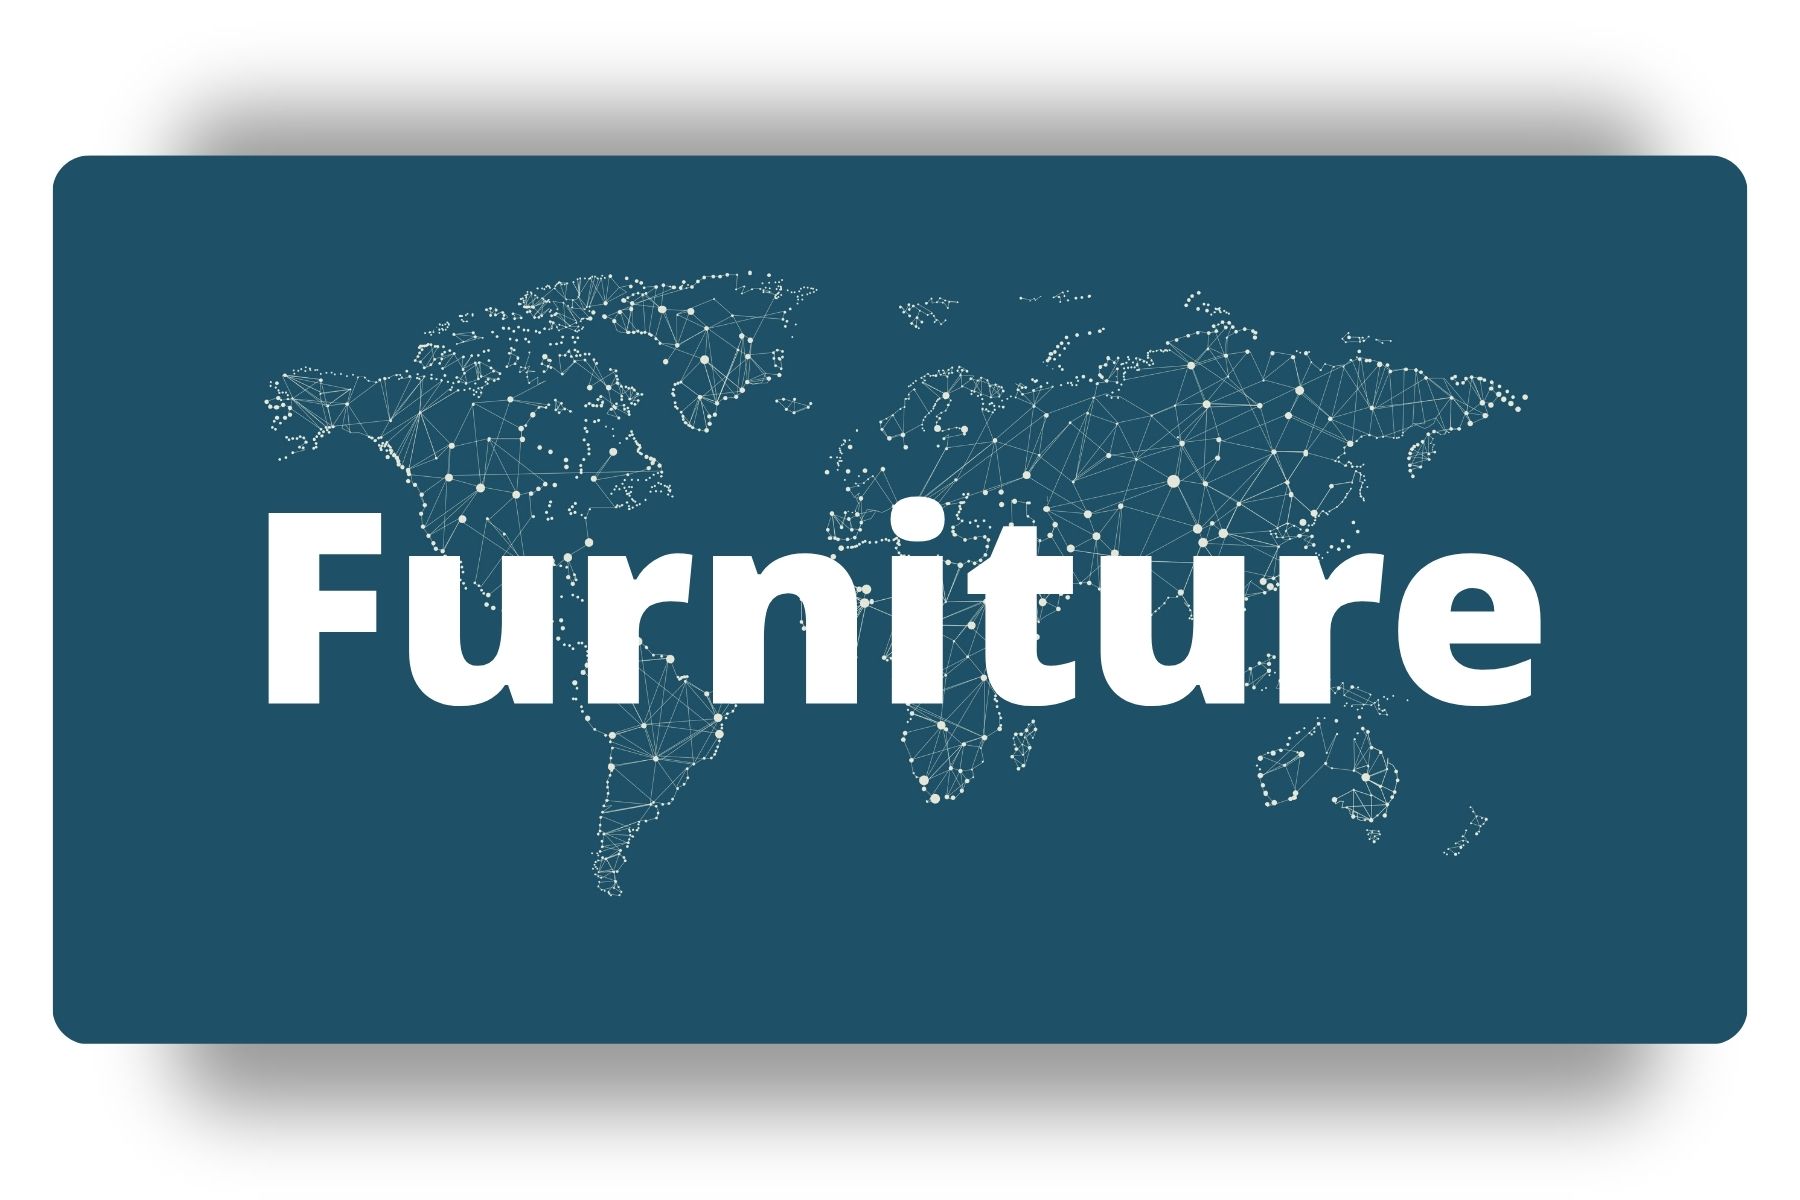 DSMN8's Furniture Leaderboard Hub Image